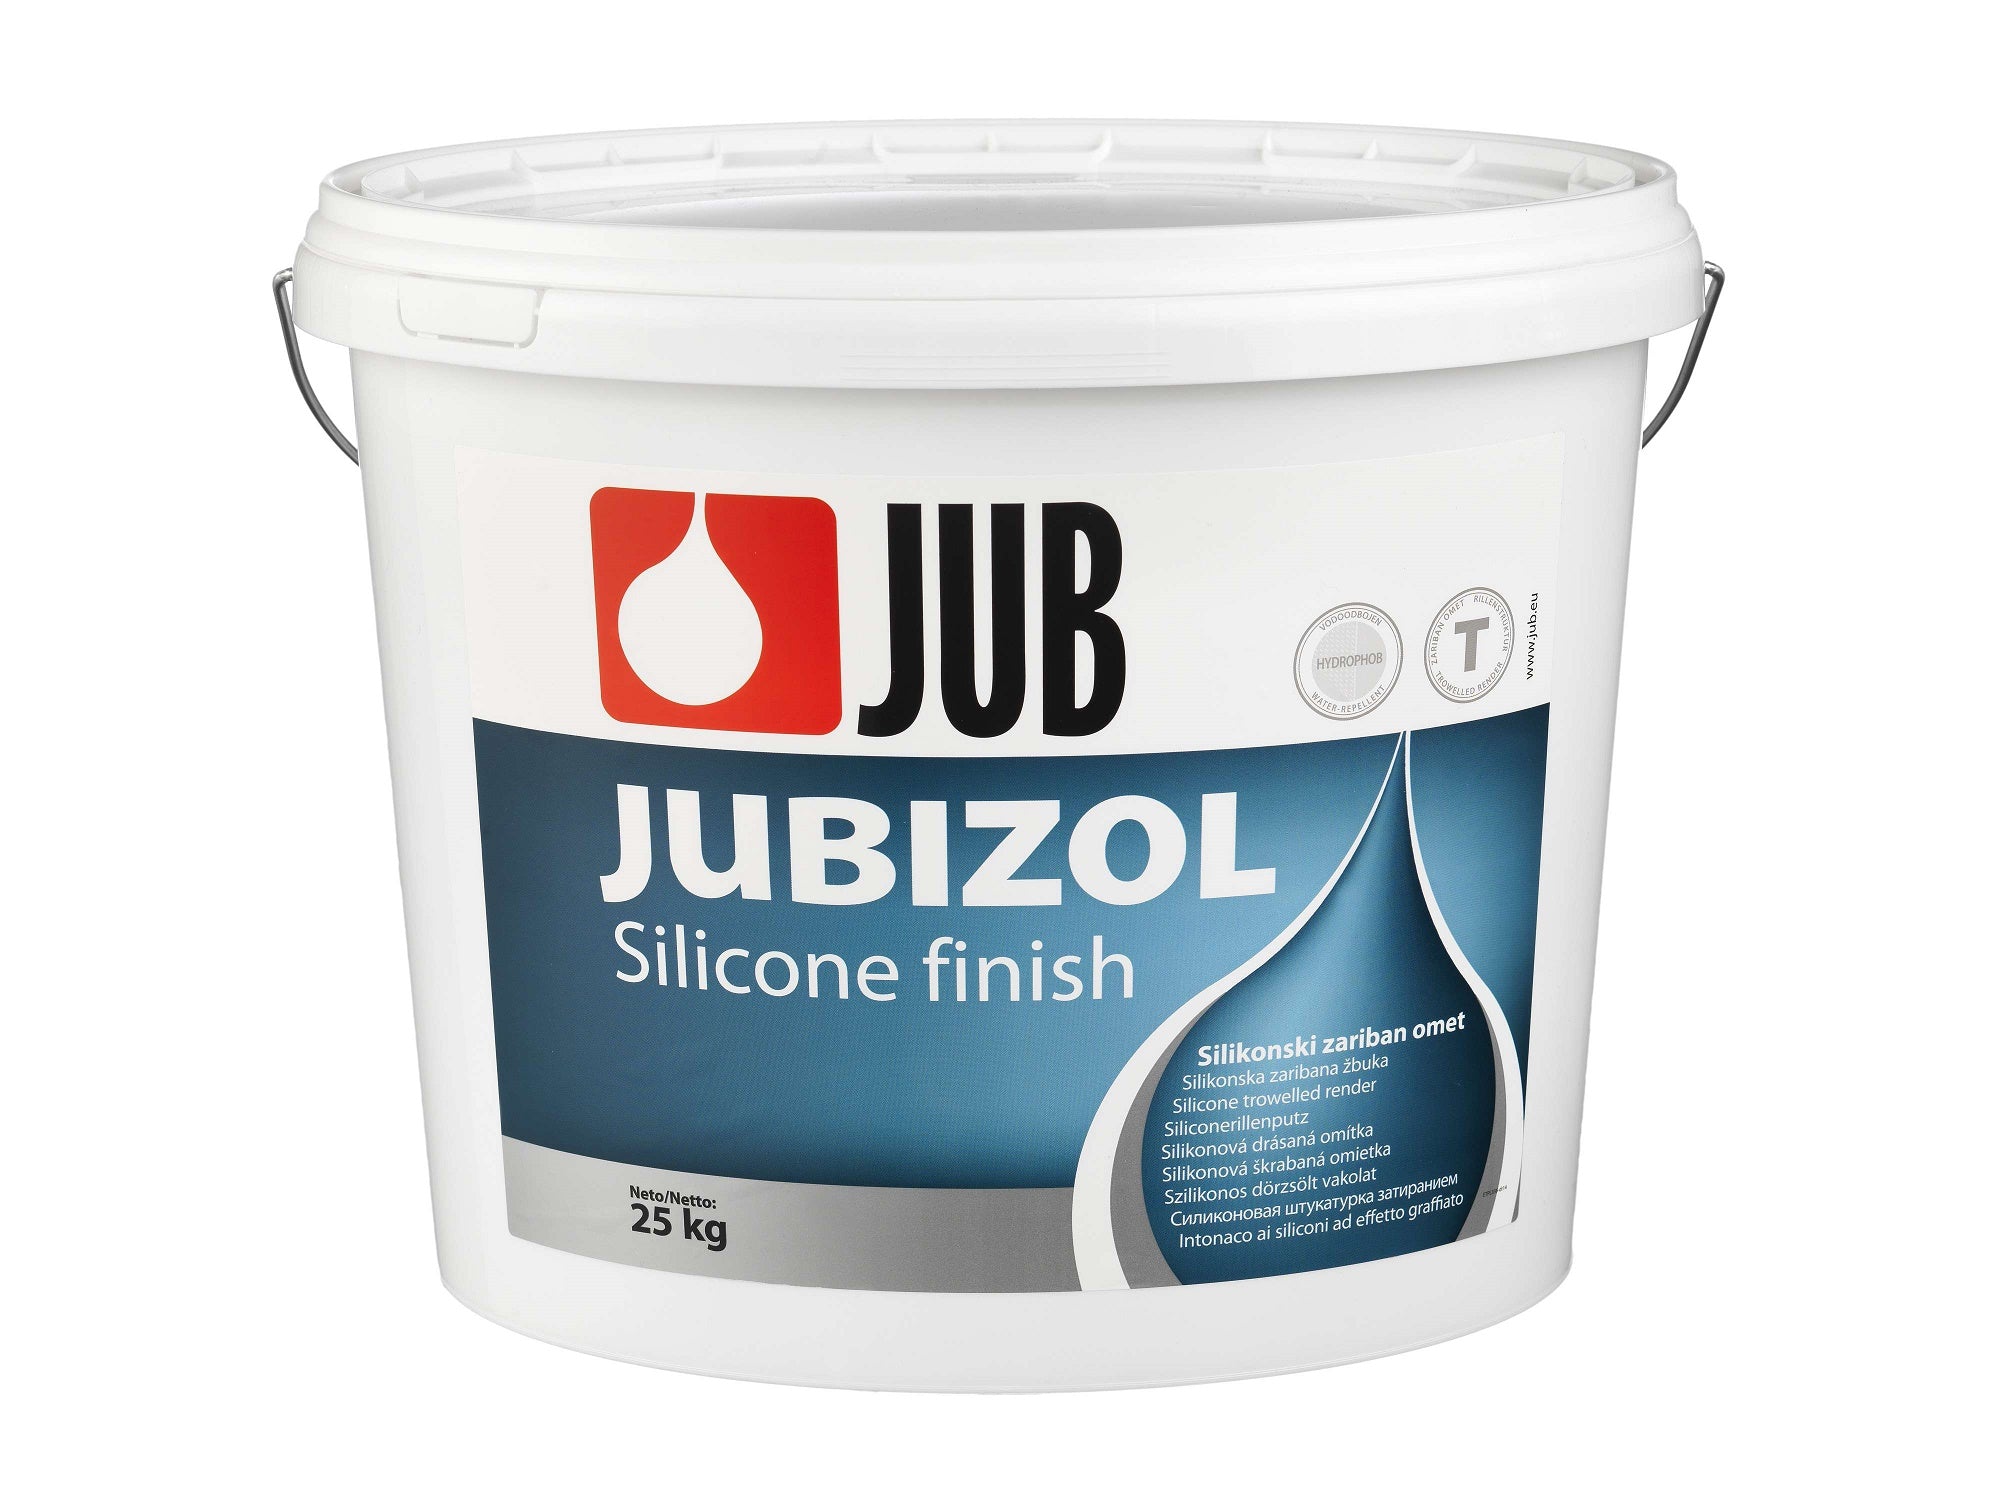 JUB JUBIZOL Silicone finish T silikonová drásaná omítka 25 kg